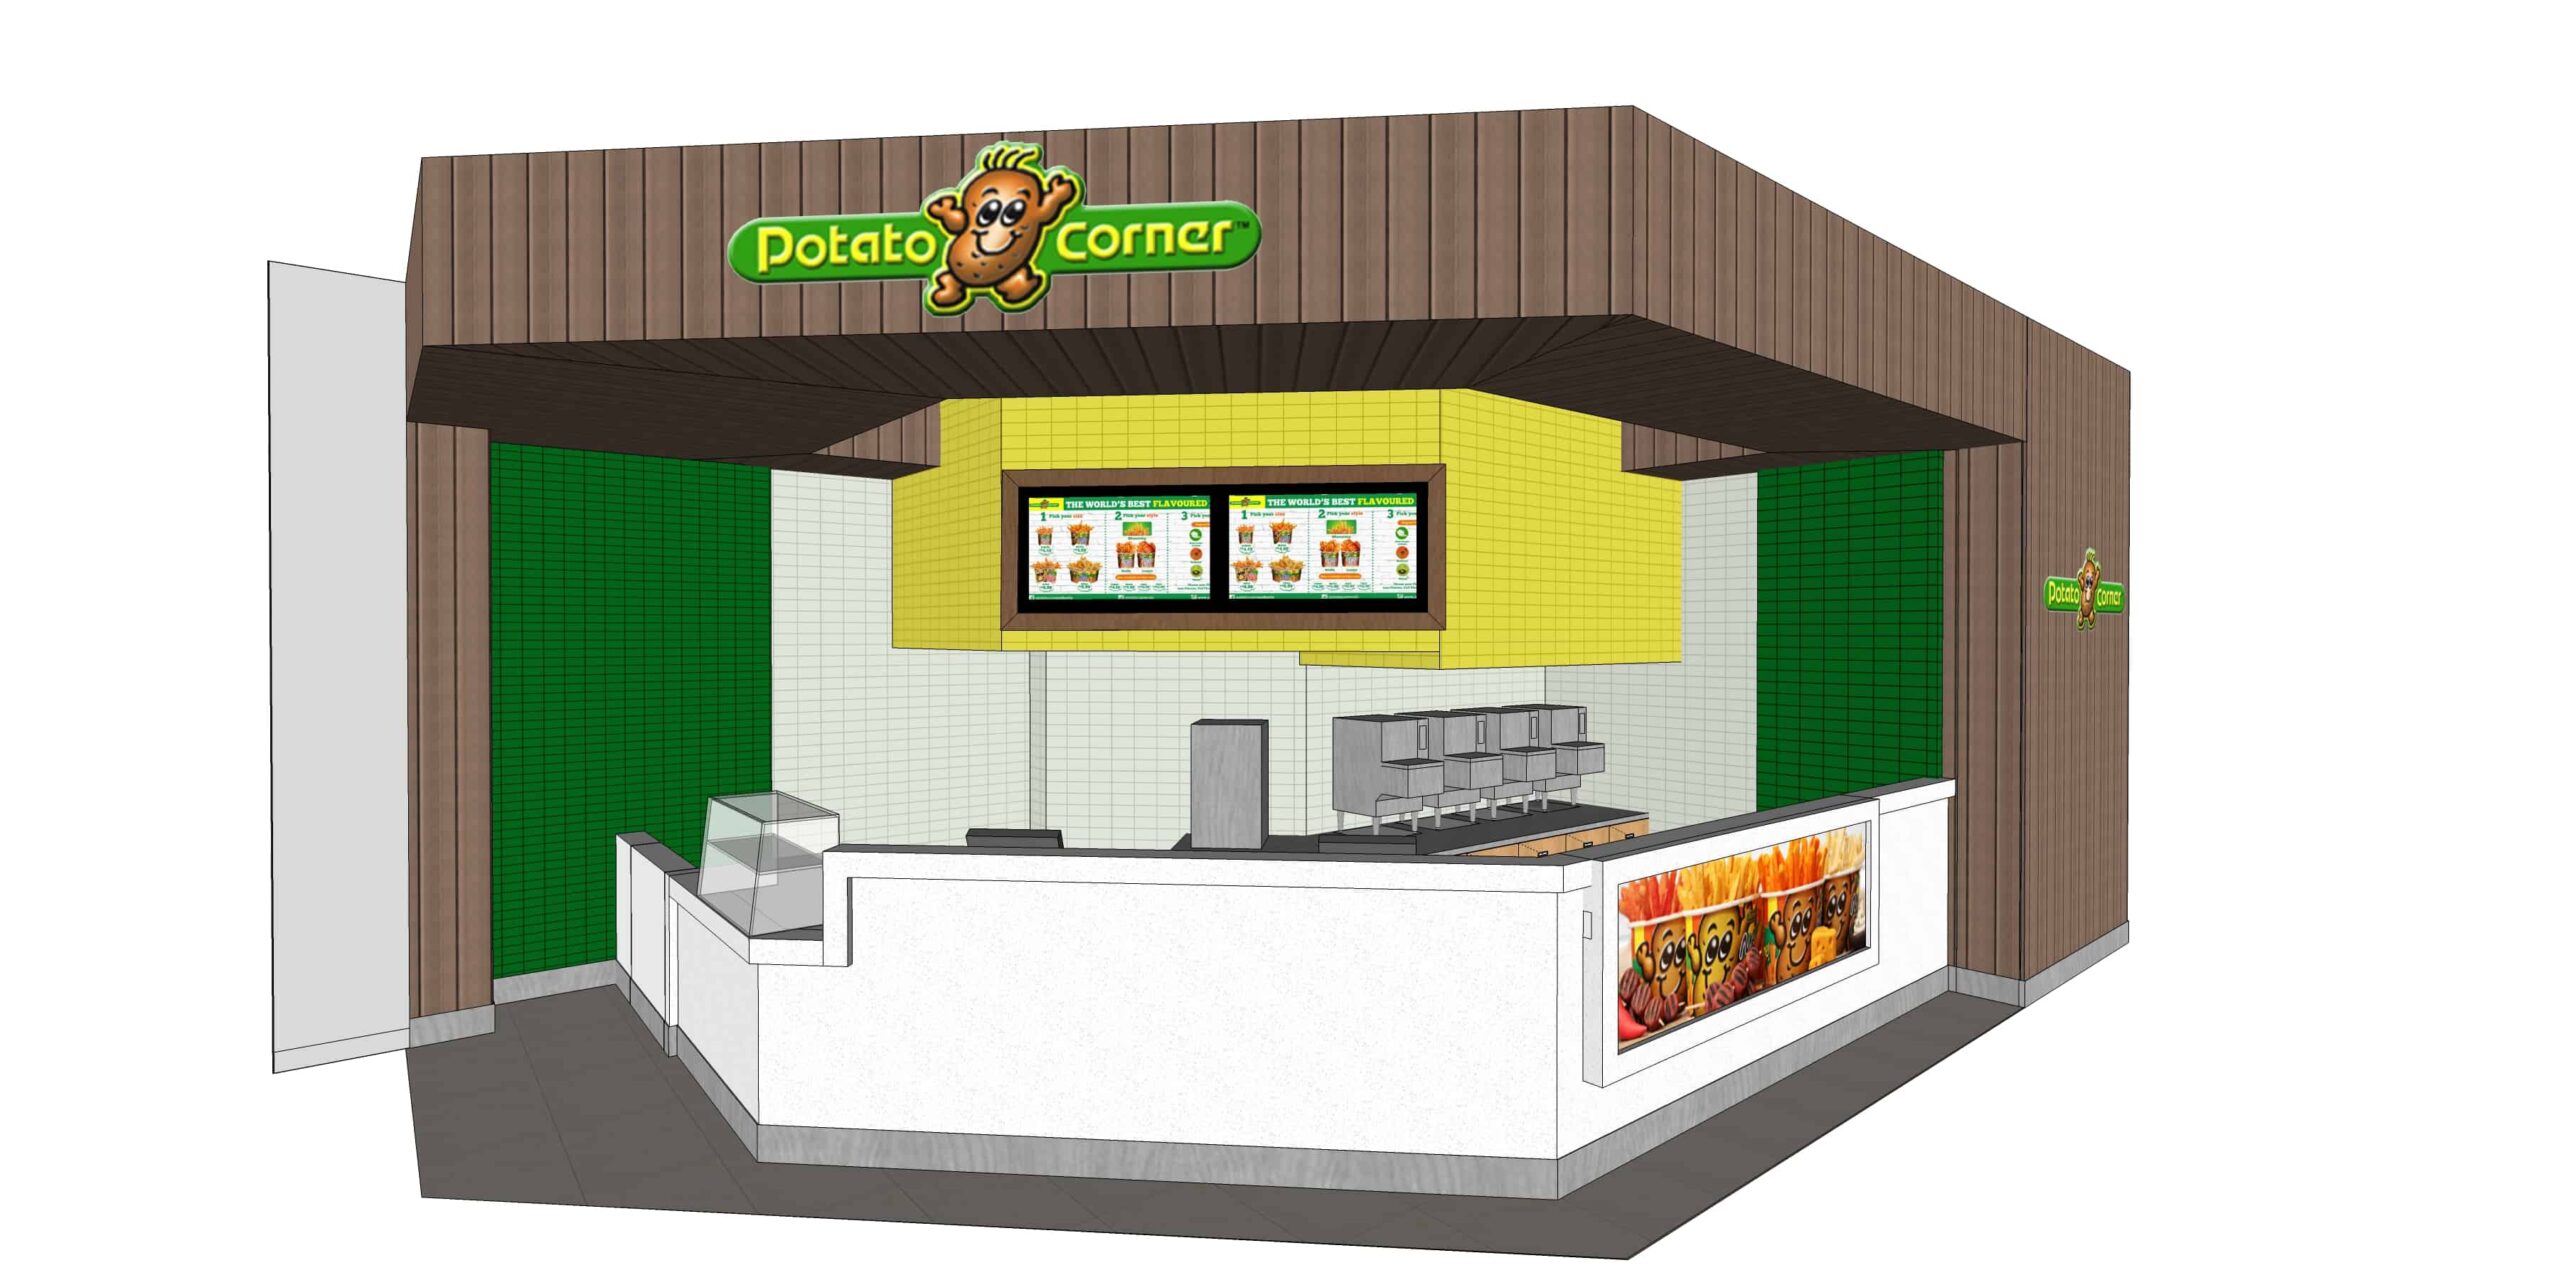 Potato Corner – Market Mall